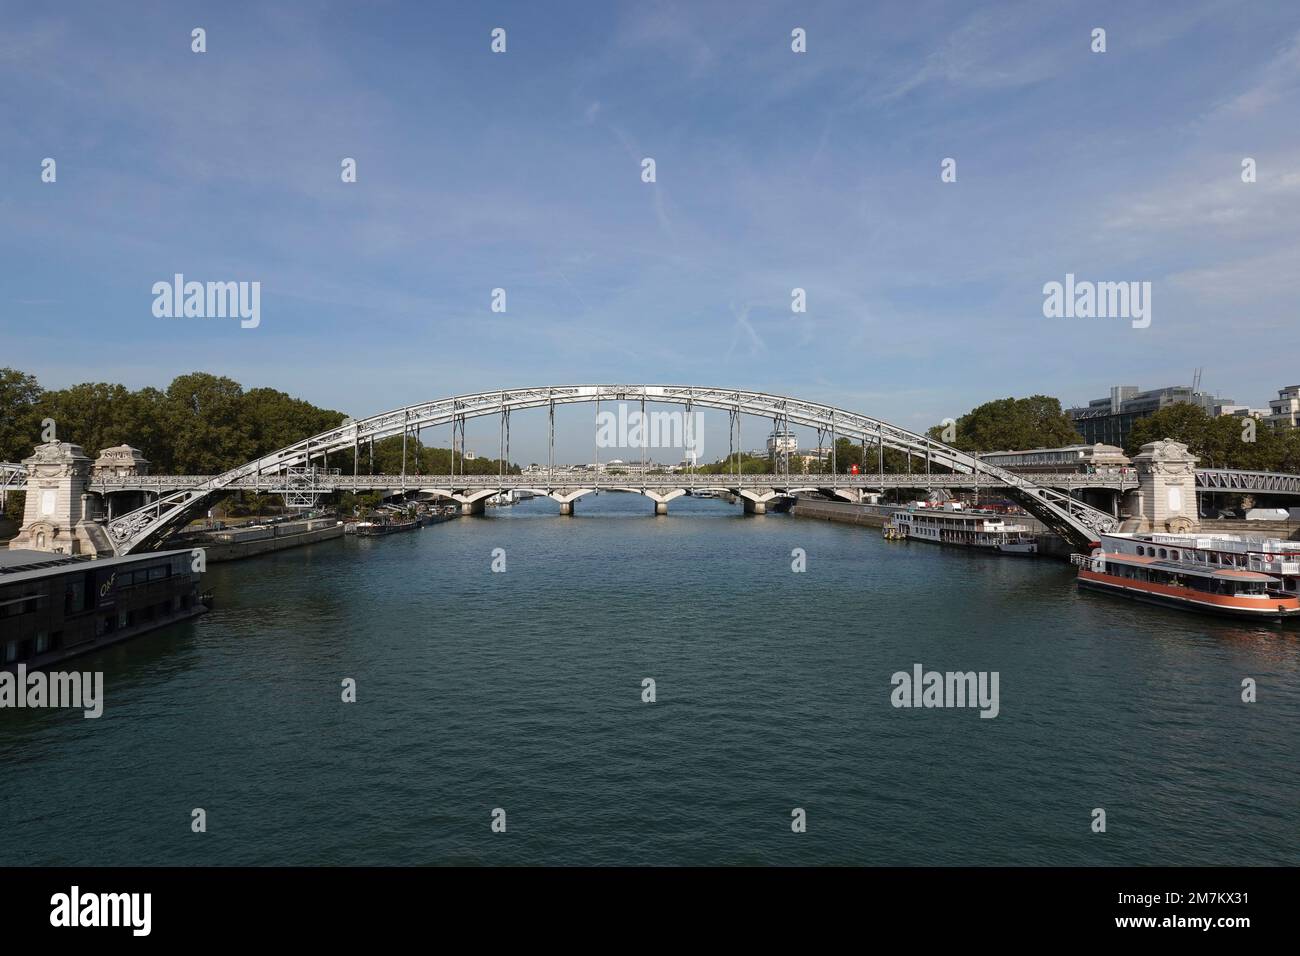 Frankreich, Paris, Viaduc d'Austerlitz (Austerlitz Viaduct) ist eine einstöckige Eisenbahnbrücke mit Stahlbogen, die die seine Photo kreuzt © Fabio Mazzarella/Si Stockfoto